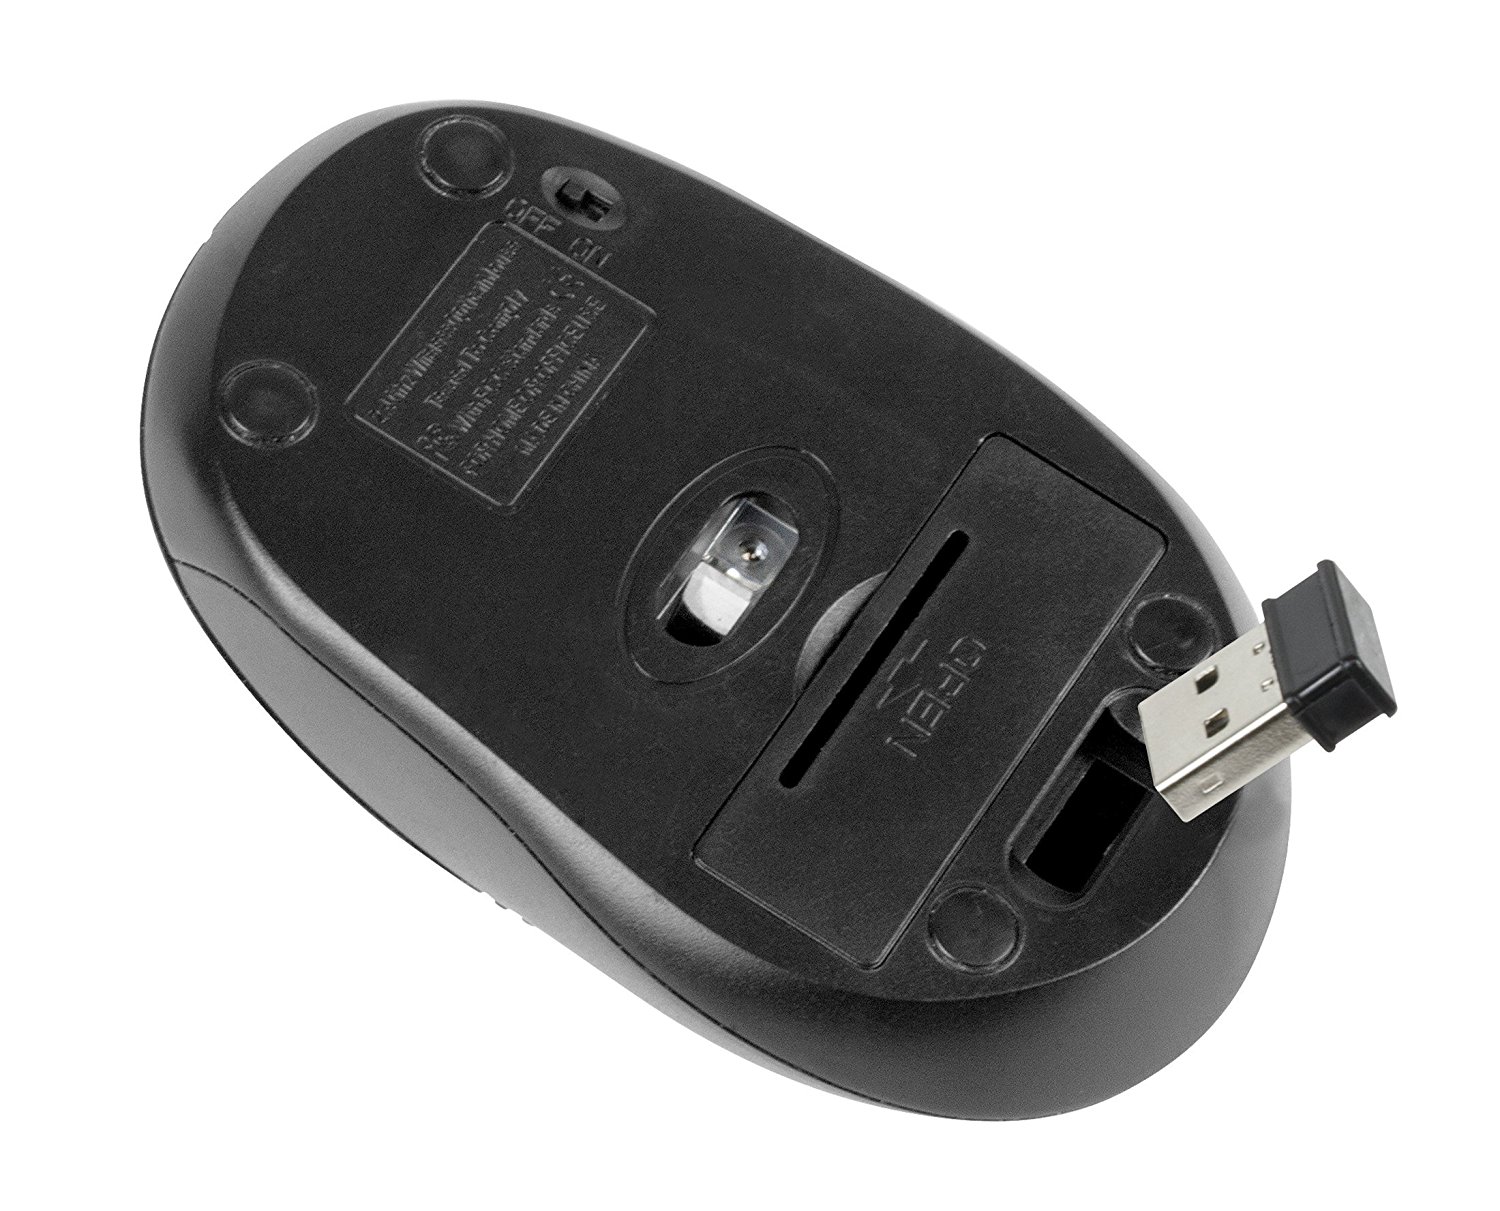 KlipX KMW-330 Vector Mouse - Black